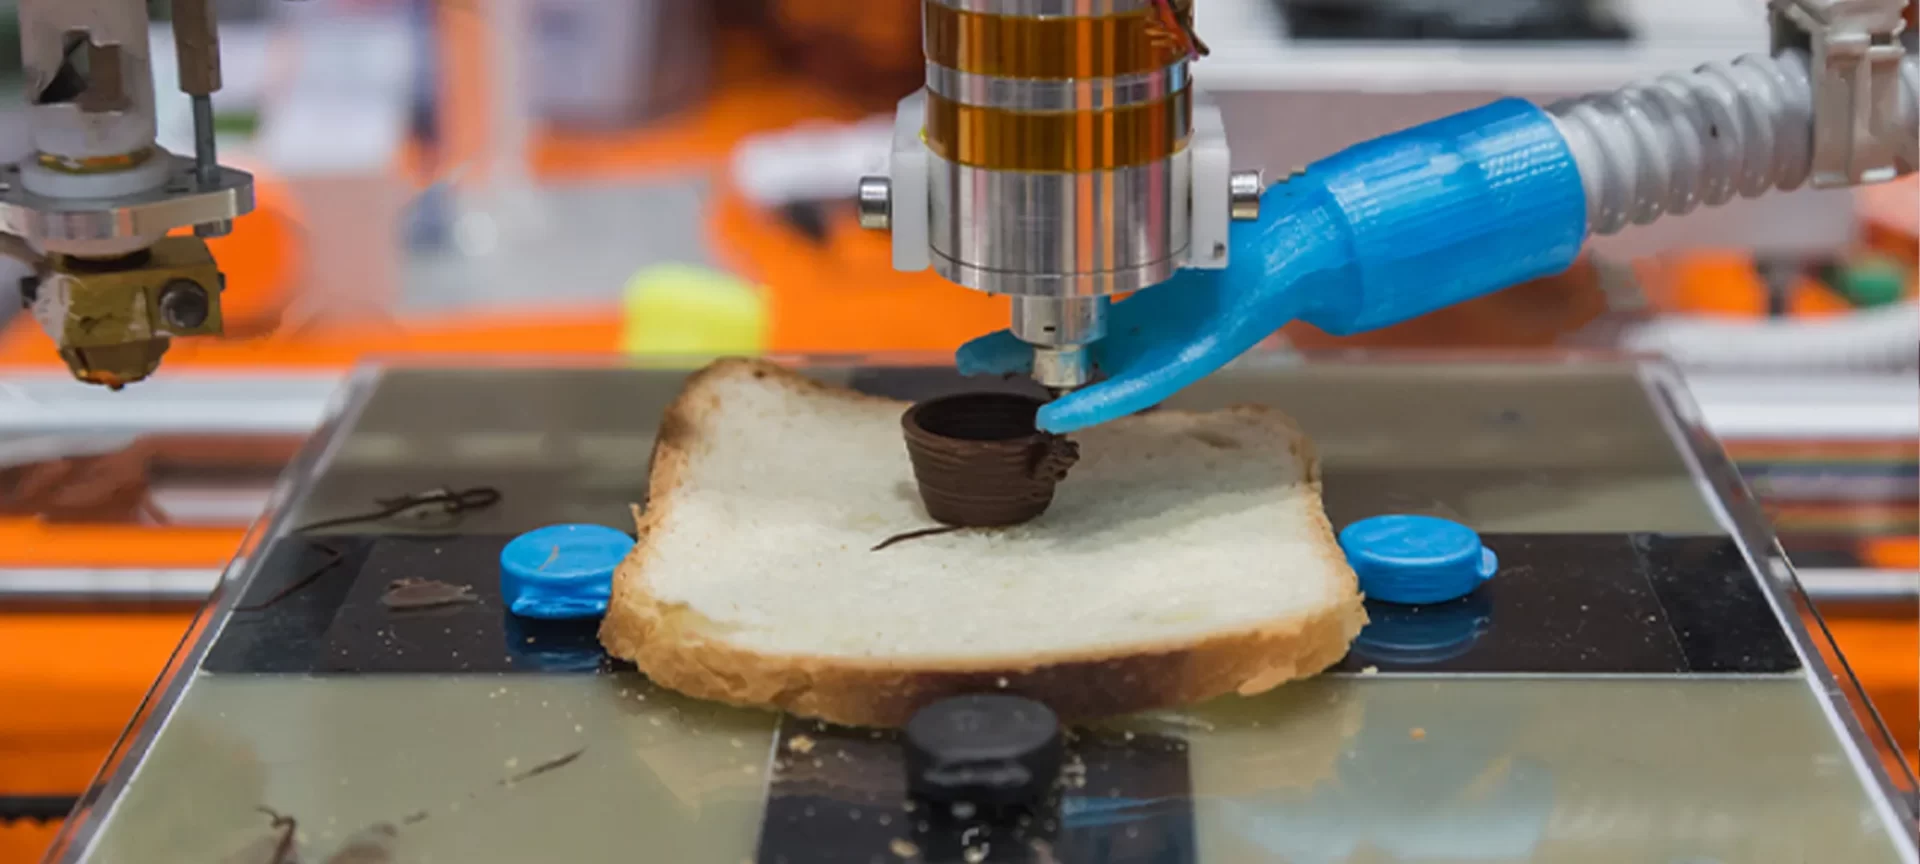 3D printed food